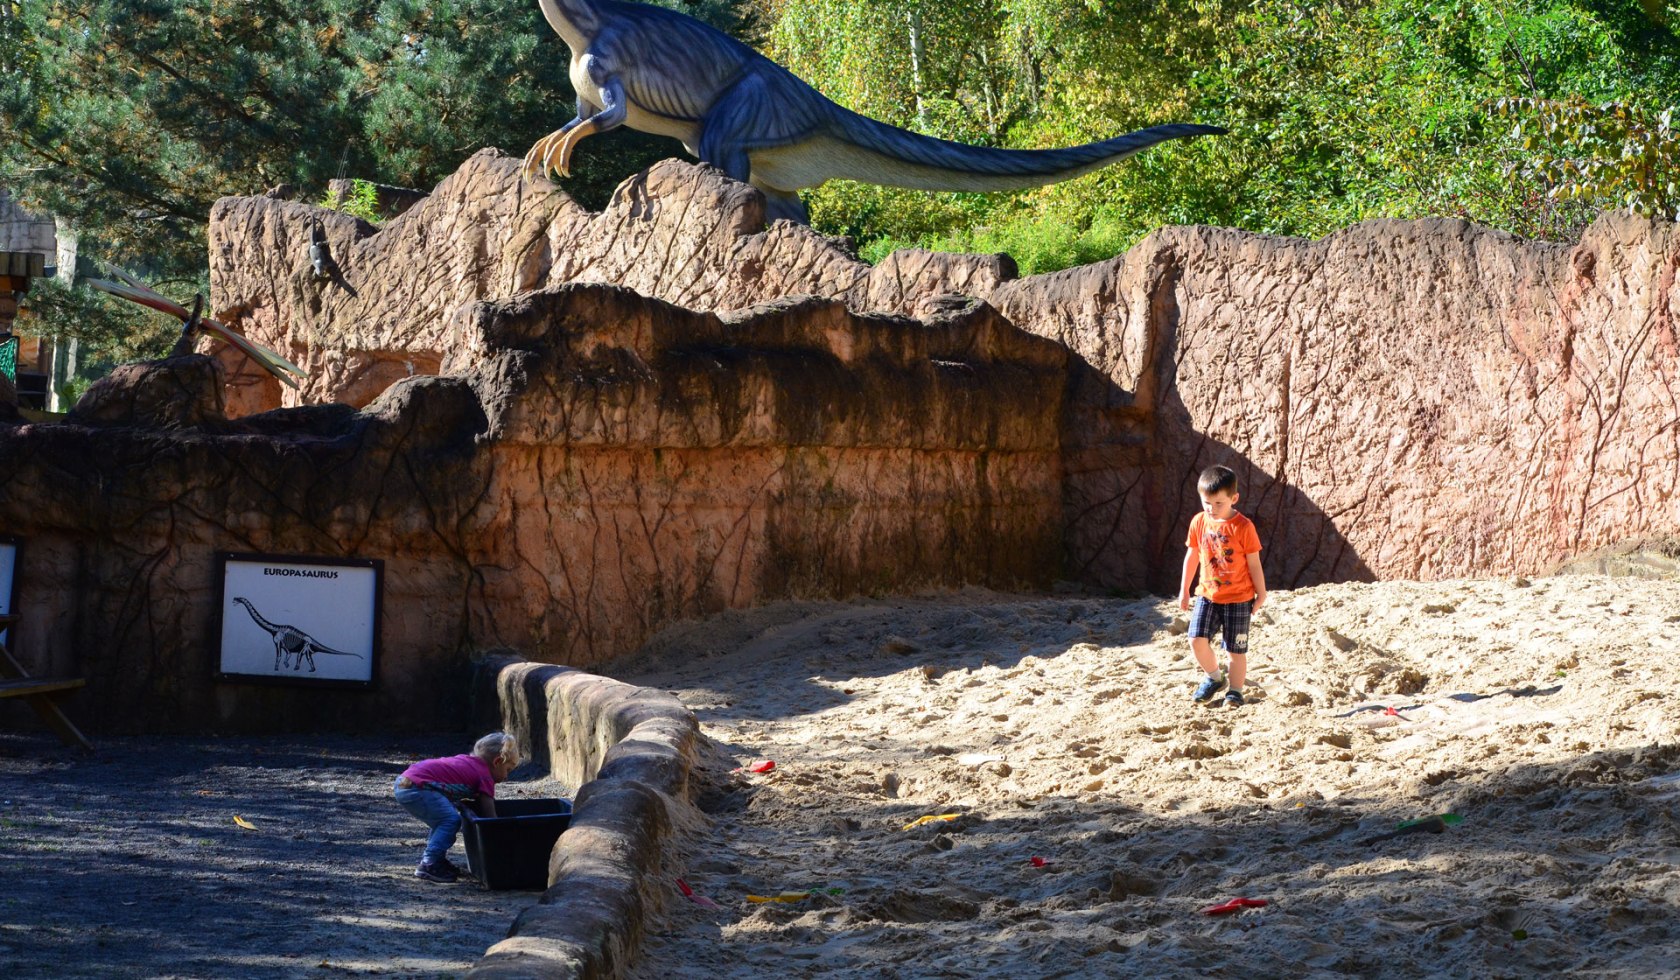 Spielende Kinder im Dinosaurier-Park Münchehagen, © Elischeba Wilde